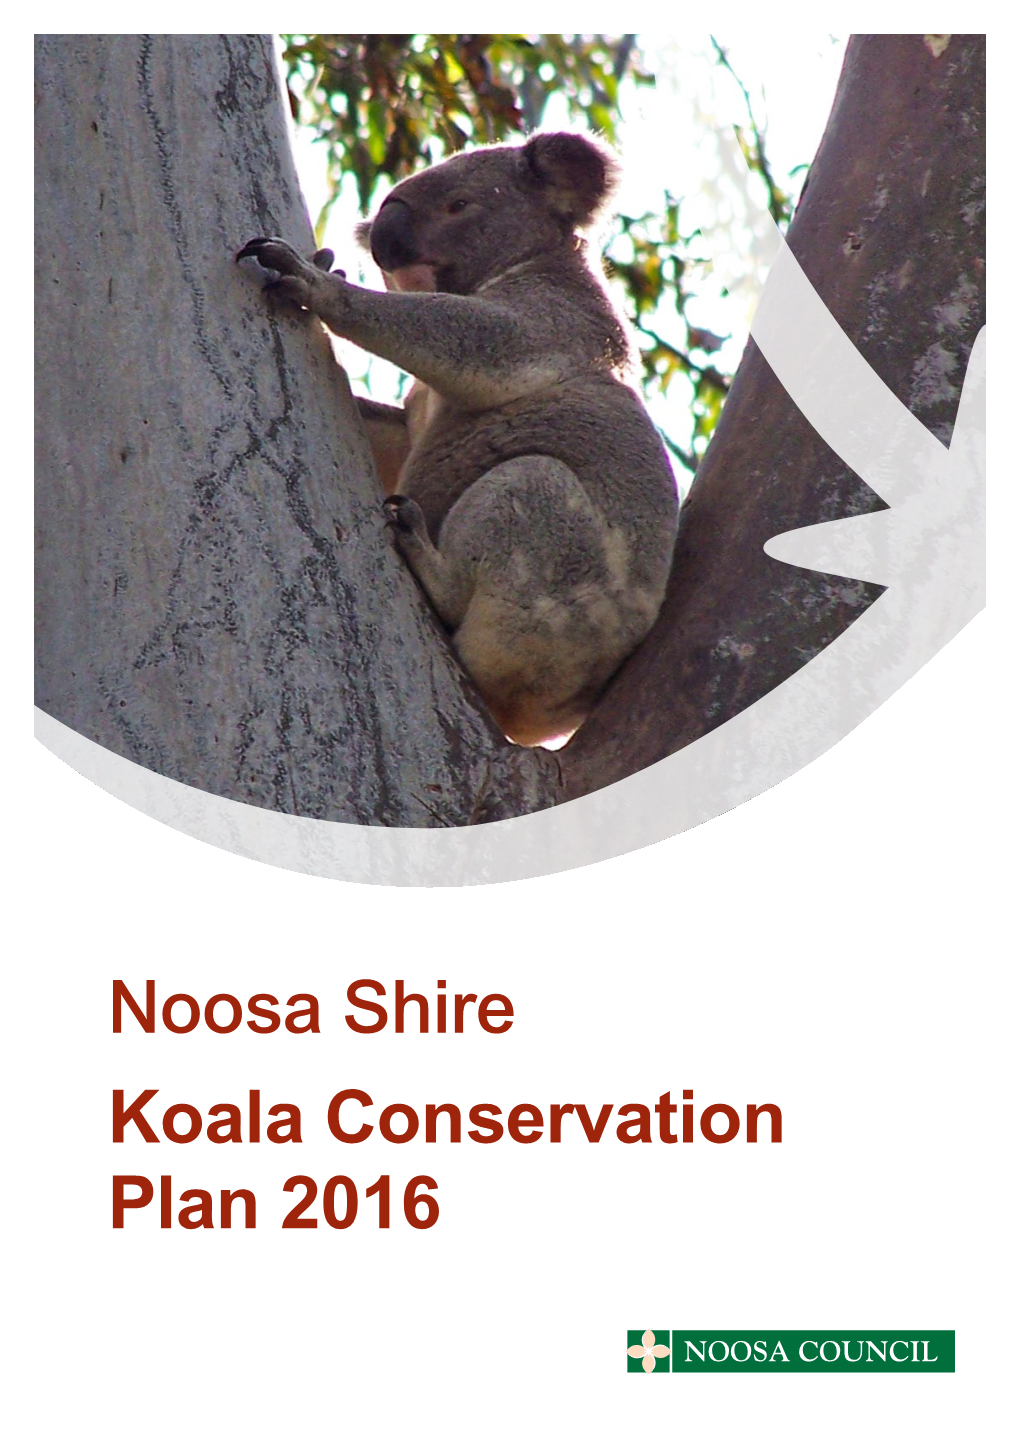 Koala Conservation Plan 2016